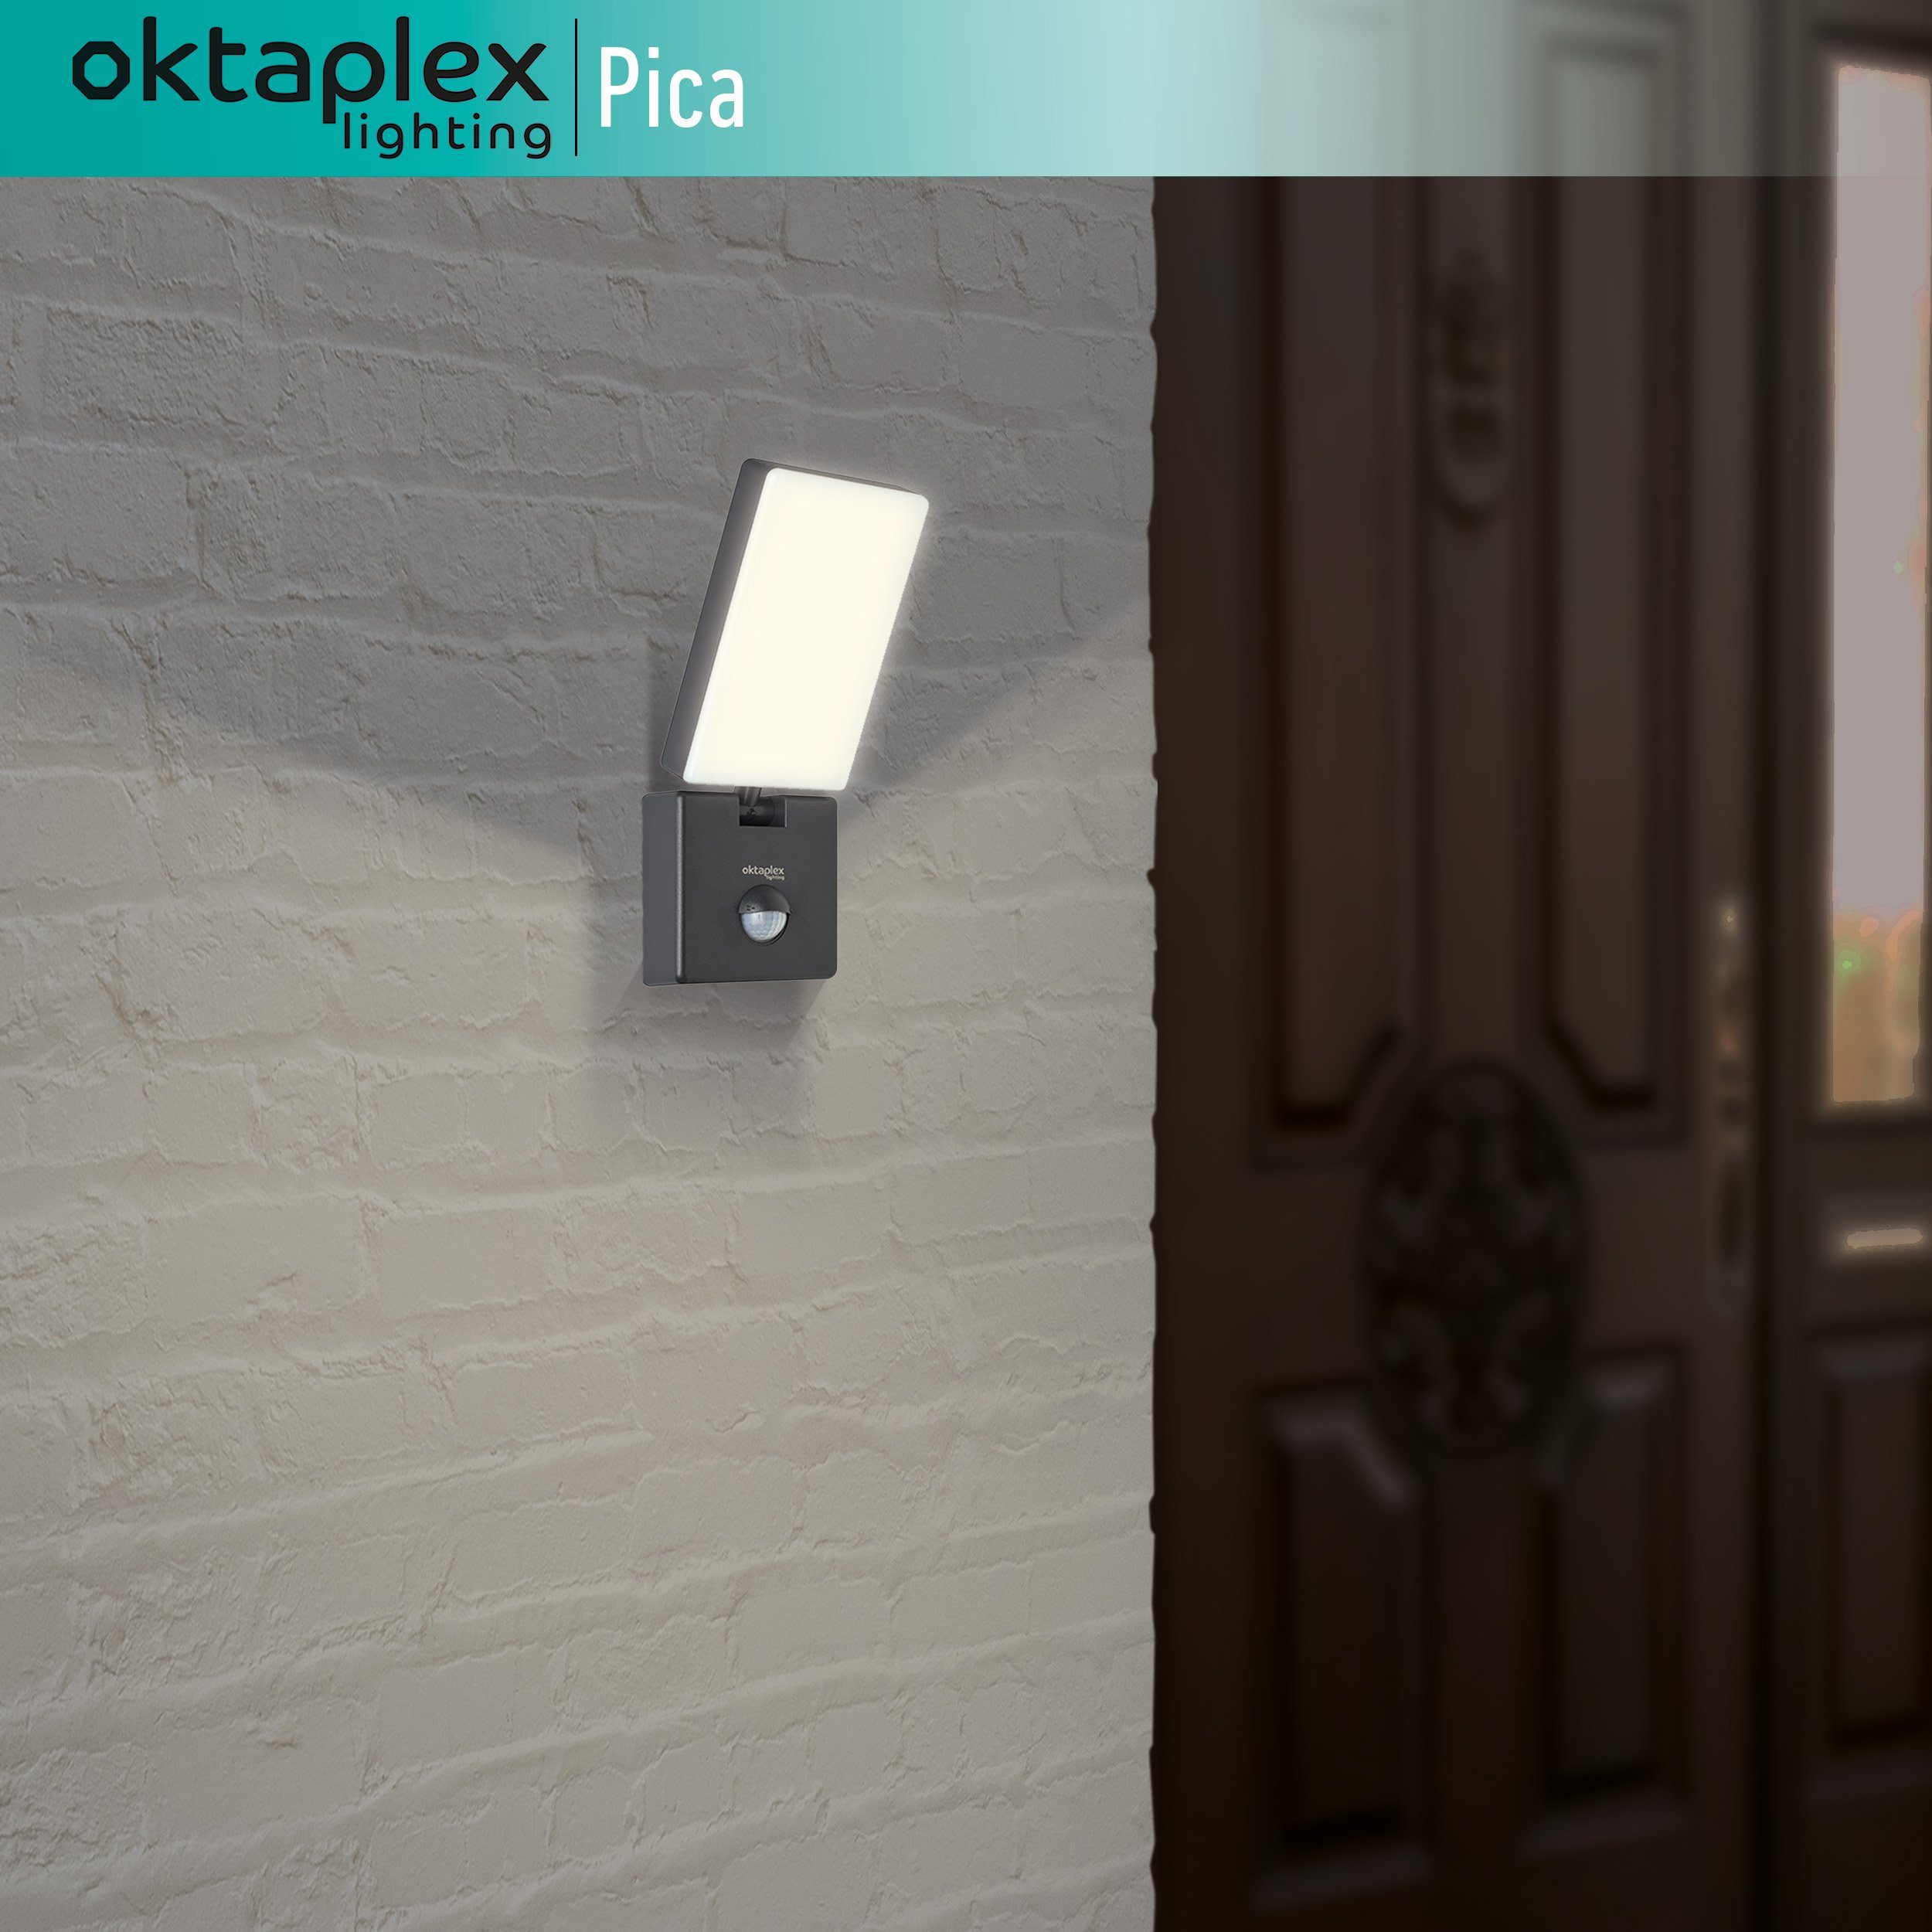 Oktaplex lighting LED Außen-Wandleuchte IP65 Außenlampe Warmweiß, integriert, flexible 10W Leuchte Bewegungsmelder, Pica, anthrazit 800lm fest LED